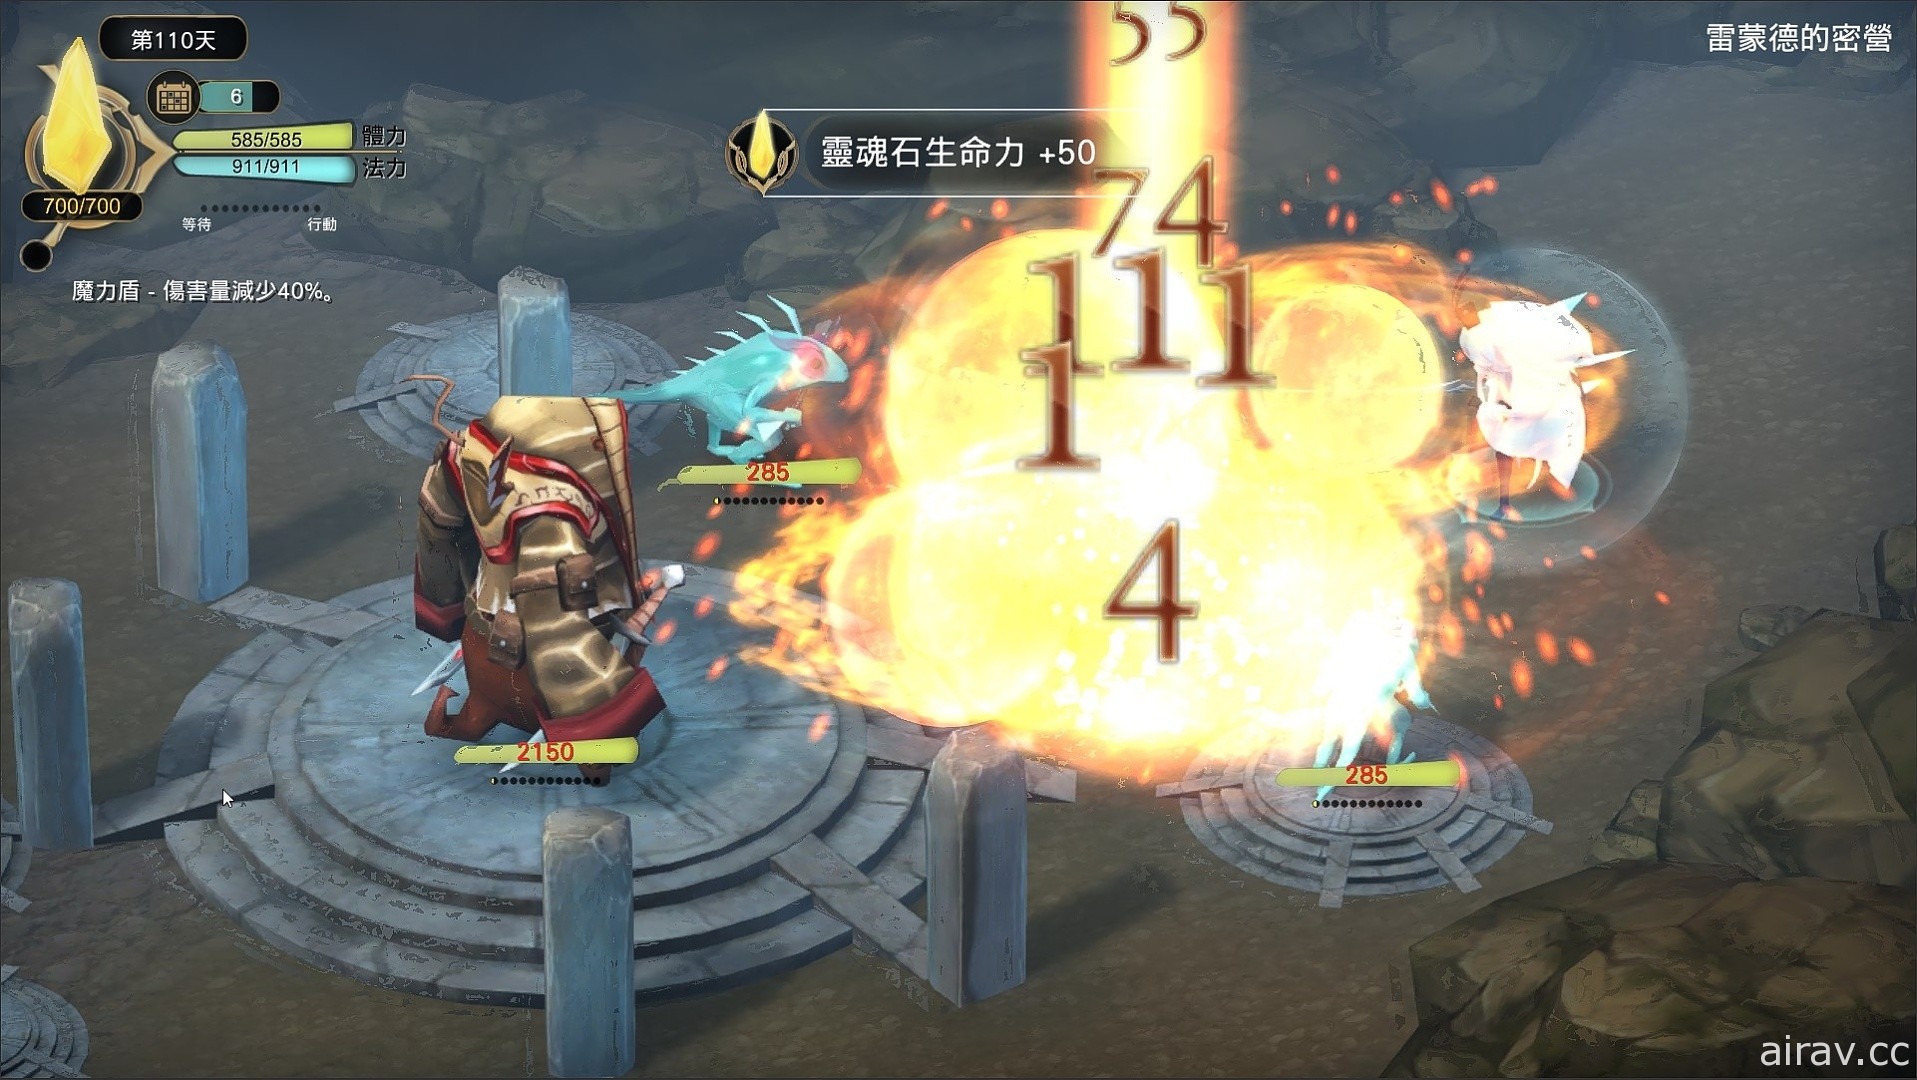 《魔女之泉 3 Re:Fine》Switch 版將於亞洲區同步發售 中文遊戲畫面曝光